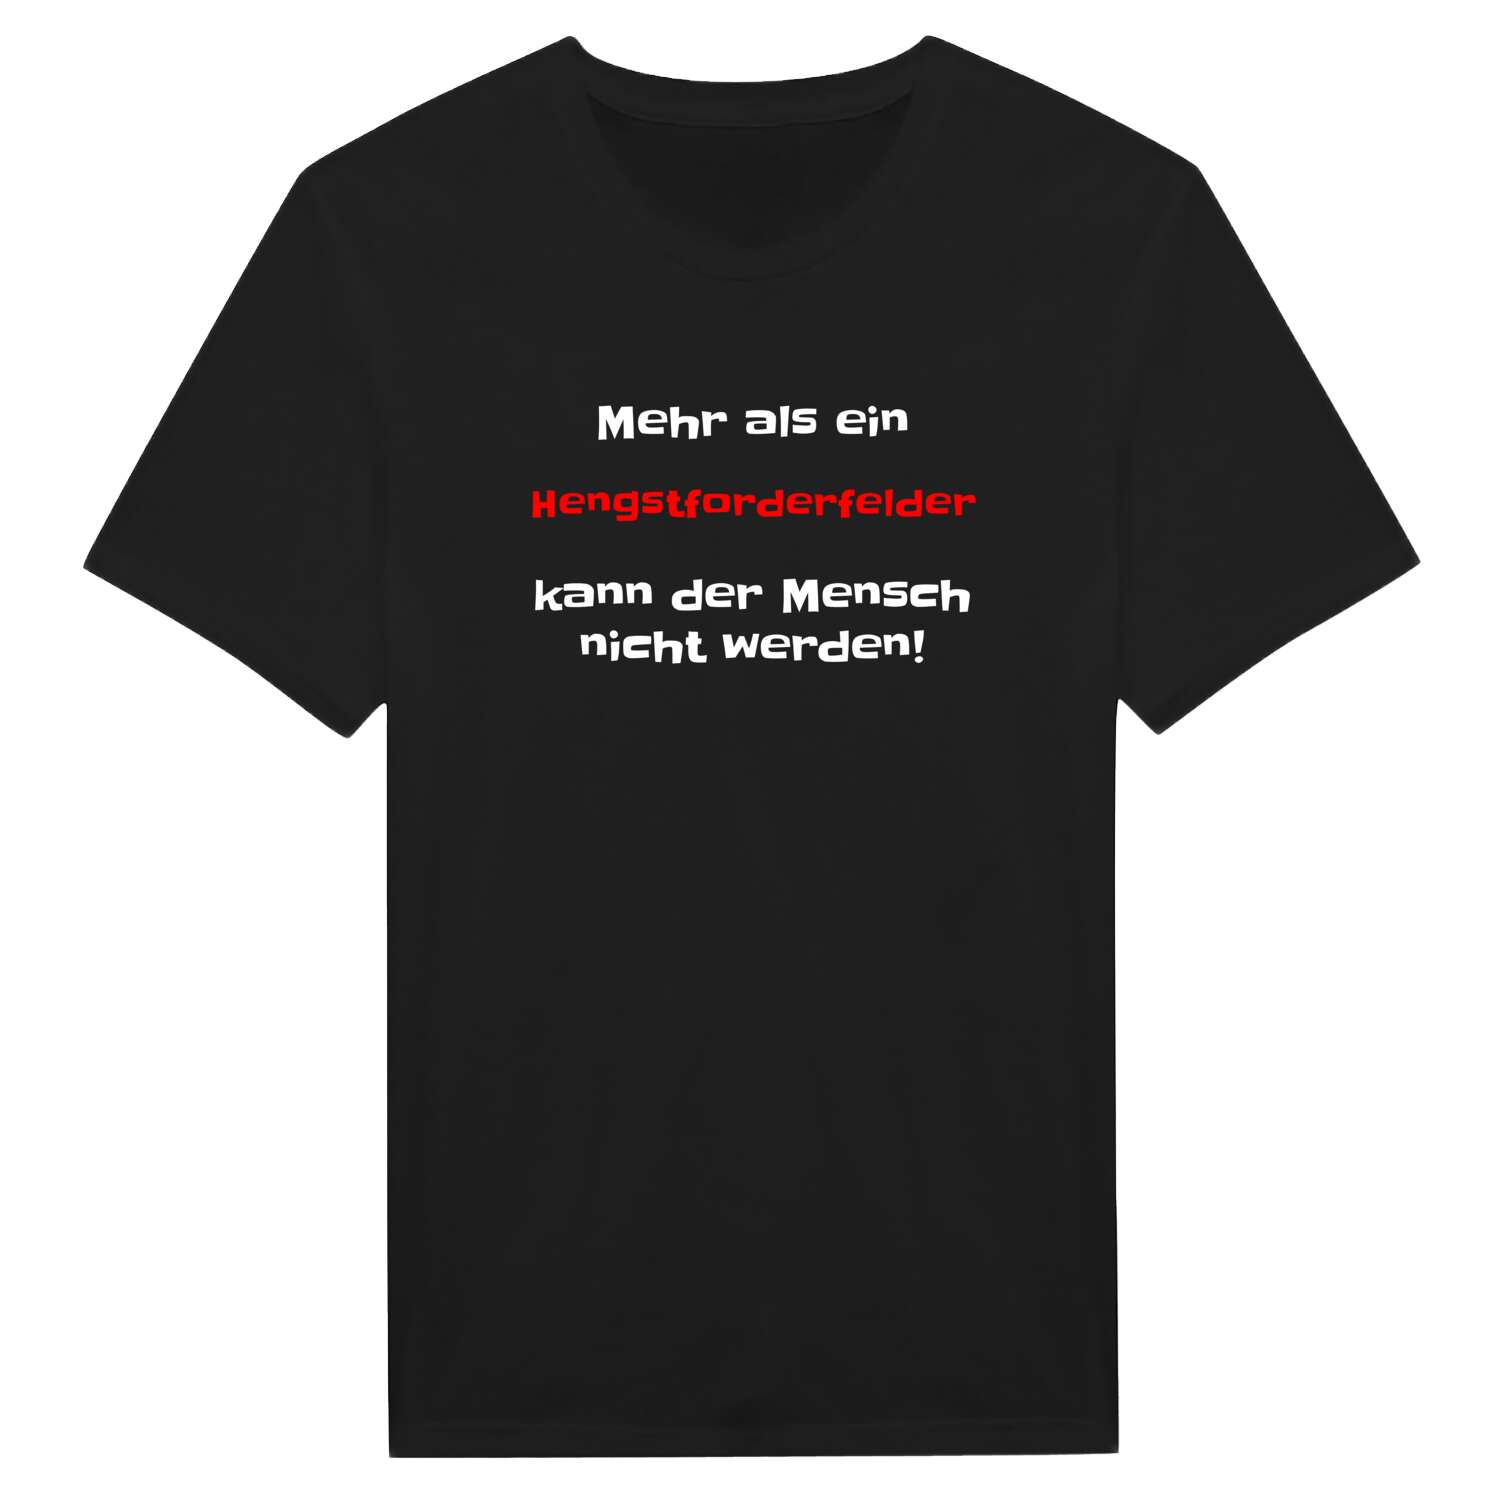 Hengstforderfeld T-Shirt »Mehr als ein«